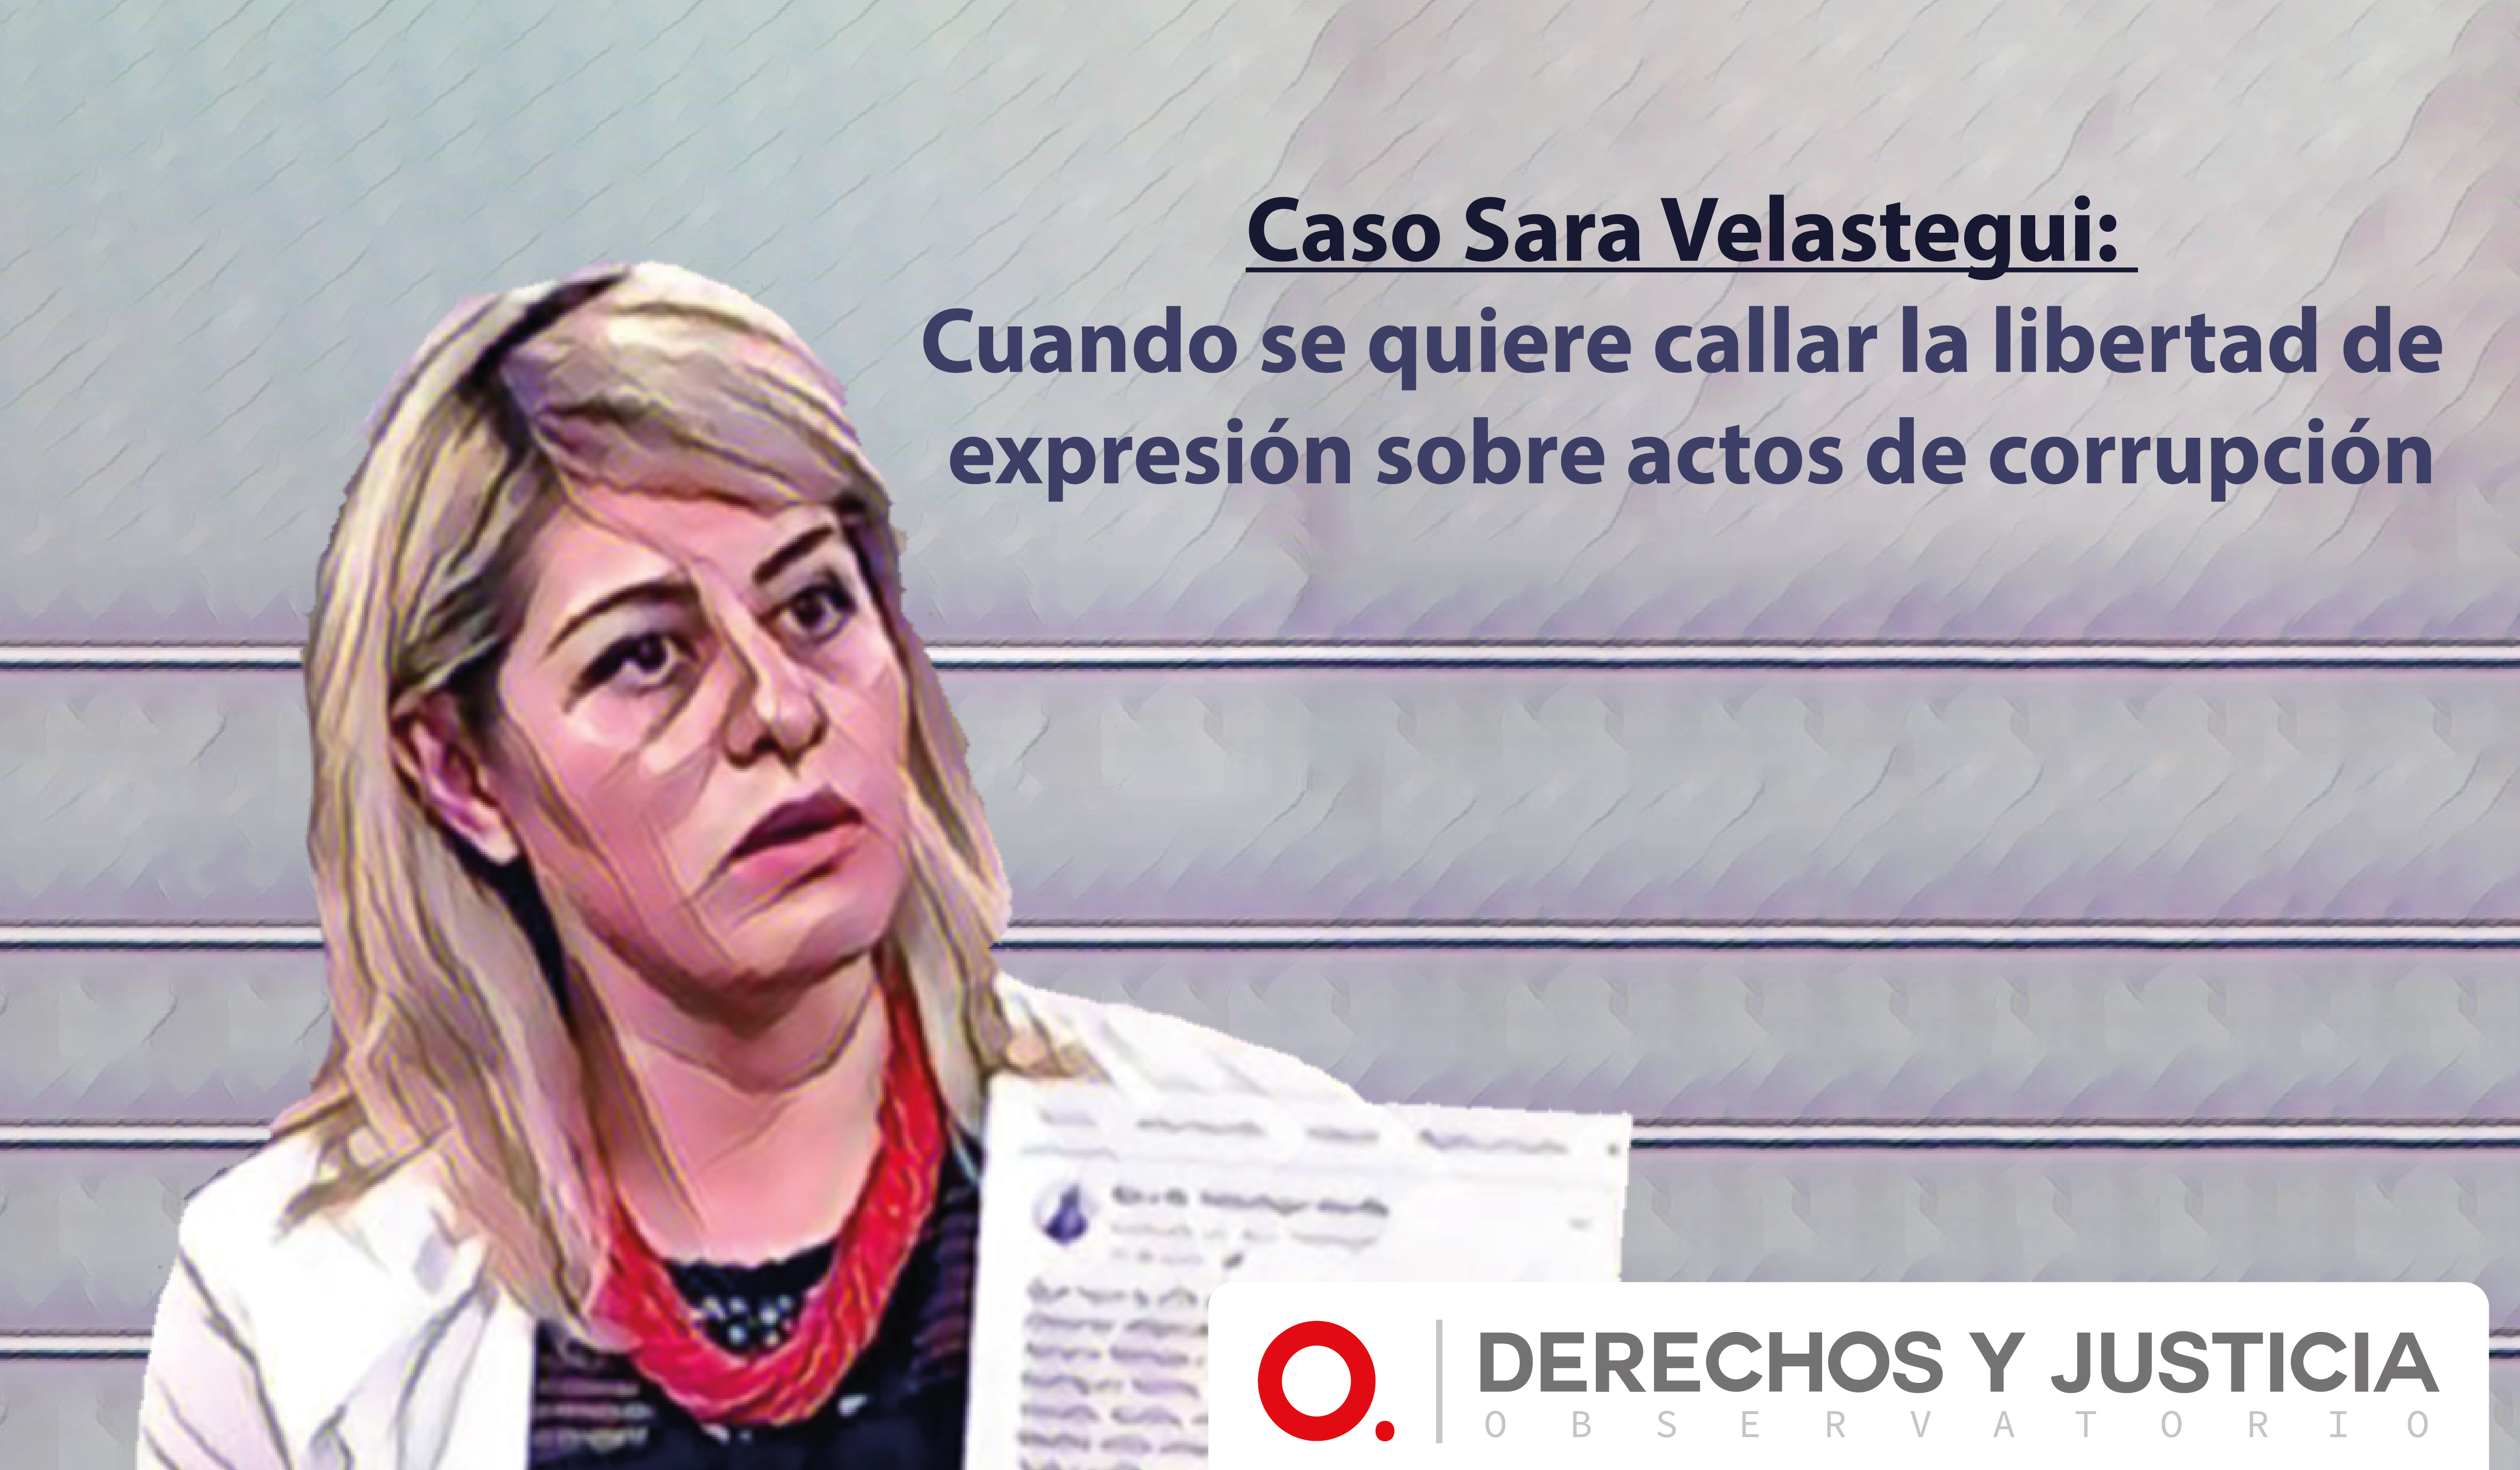 El alcance del interés público, y la denuncia de posibles actos de corrupción en redes sociales: un análisis a partir del caso de Sara Velástegui.